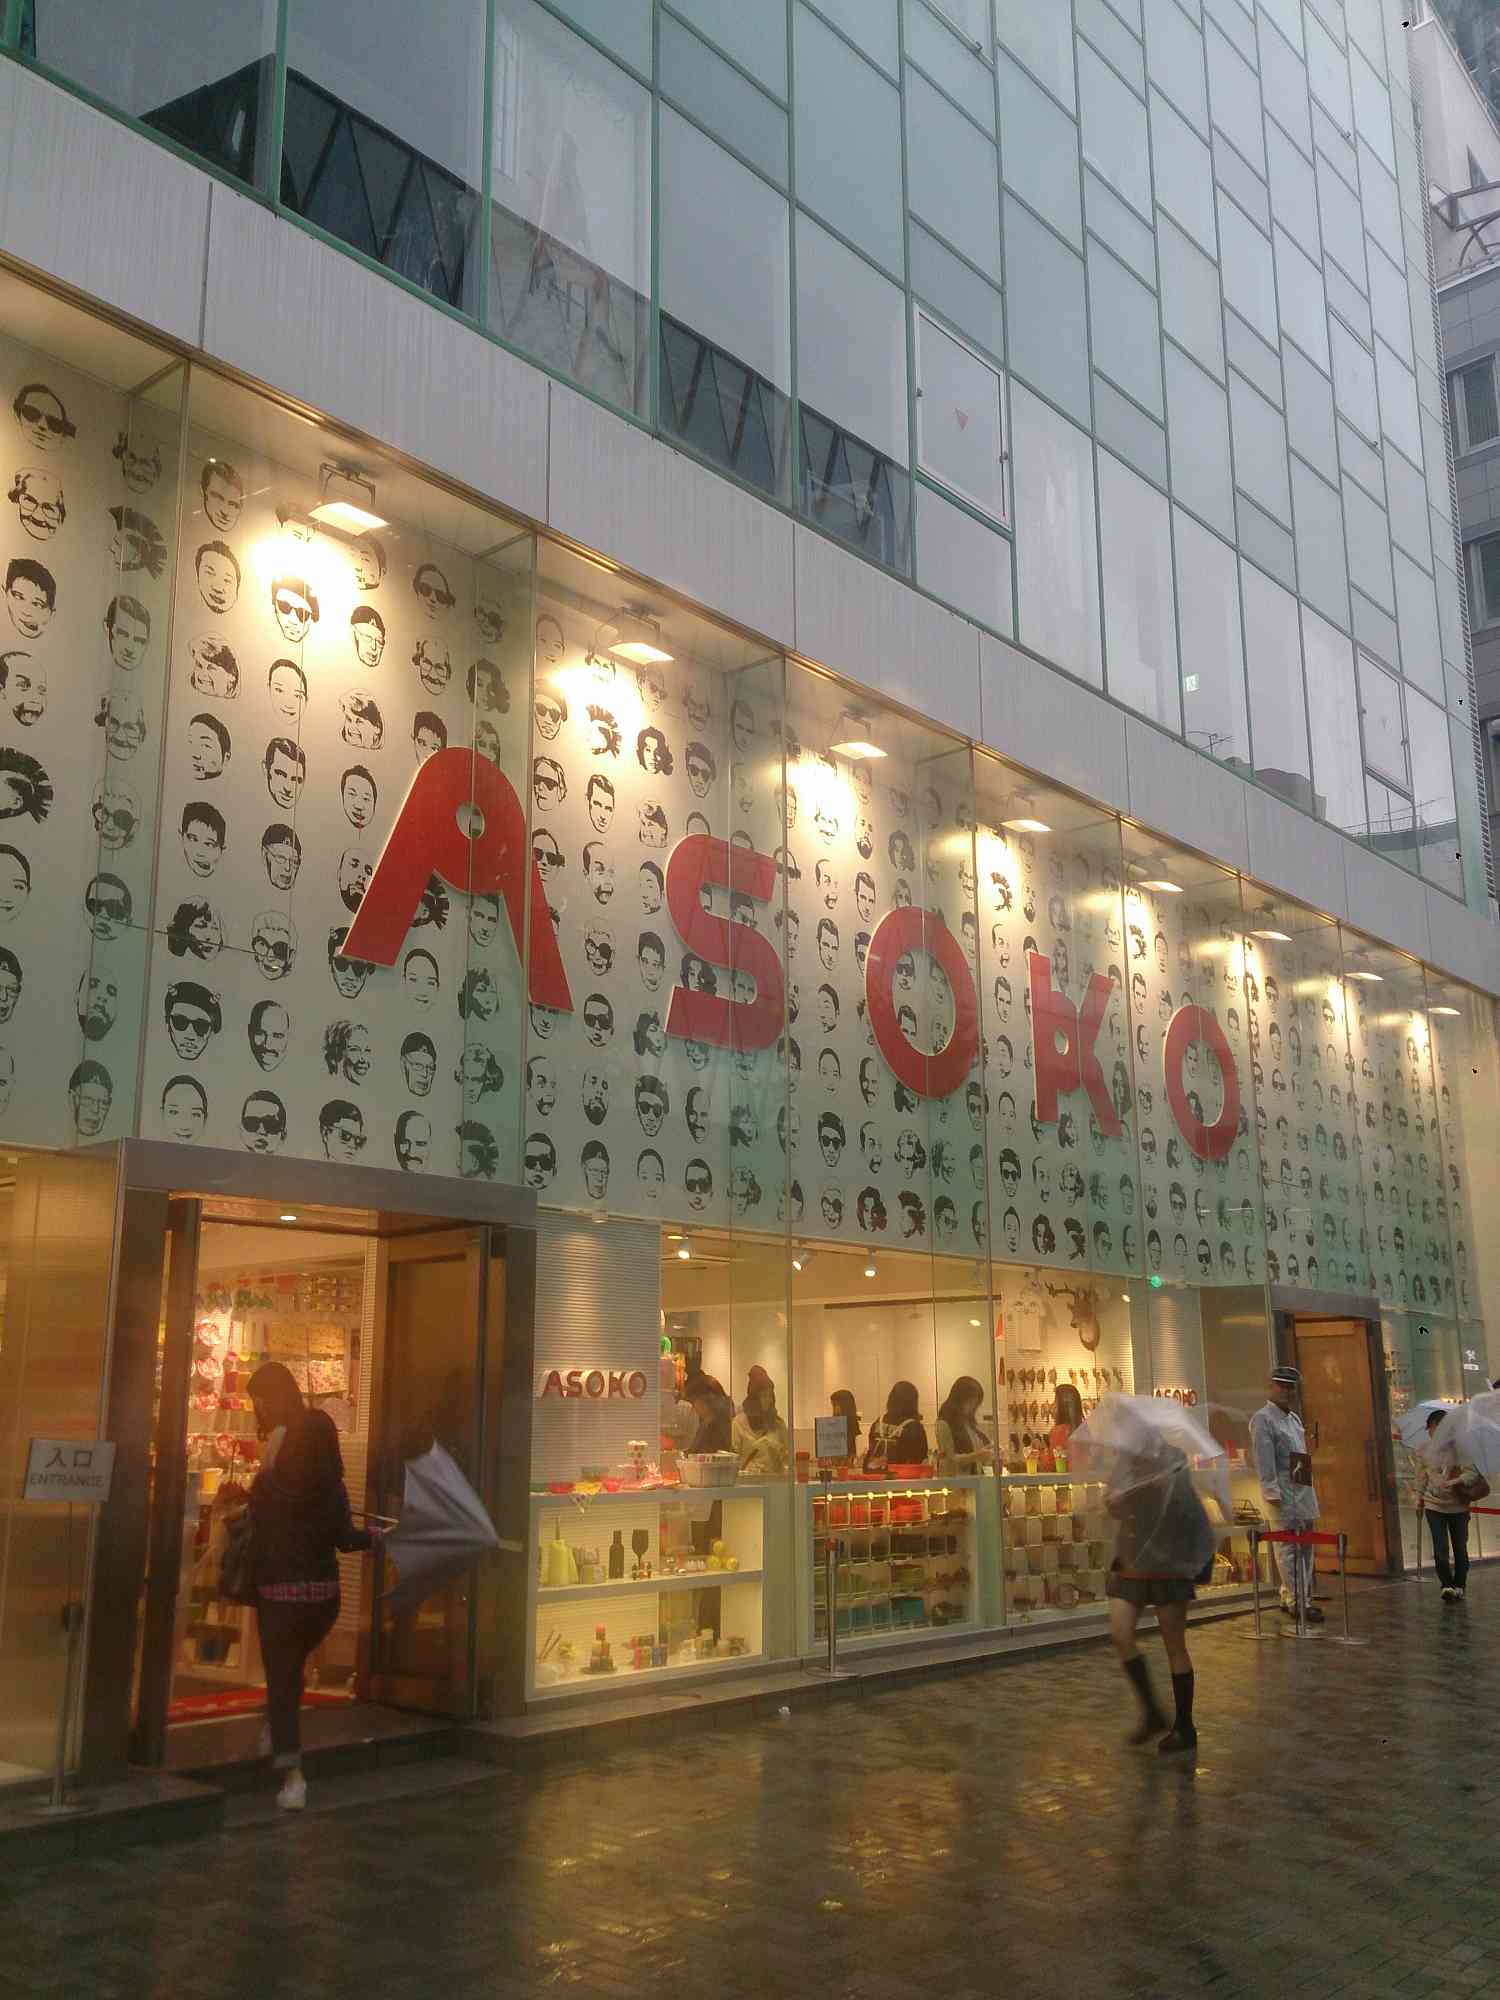 東京都渋谷区神宮前6 27 8 安かろう悪かろうなファストブランド雑貨店なのに商品一つ一つを見てみると そこそこの質が良くて驚いた Asoko原宿店 はオススメ 日本散策ガイド